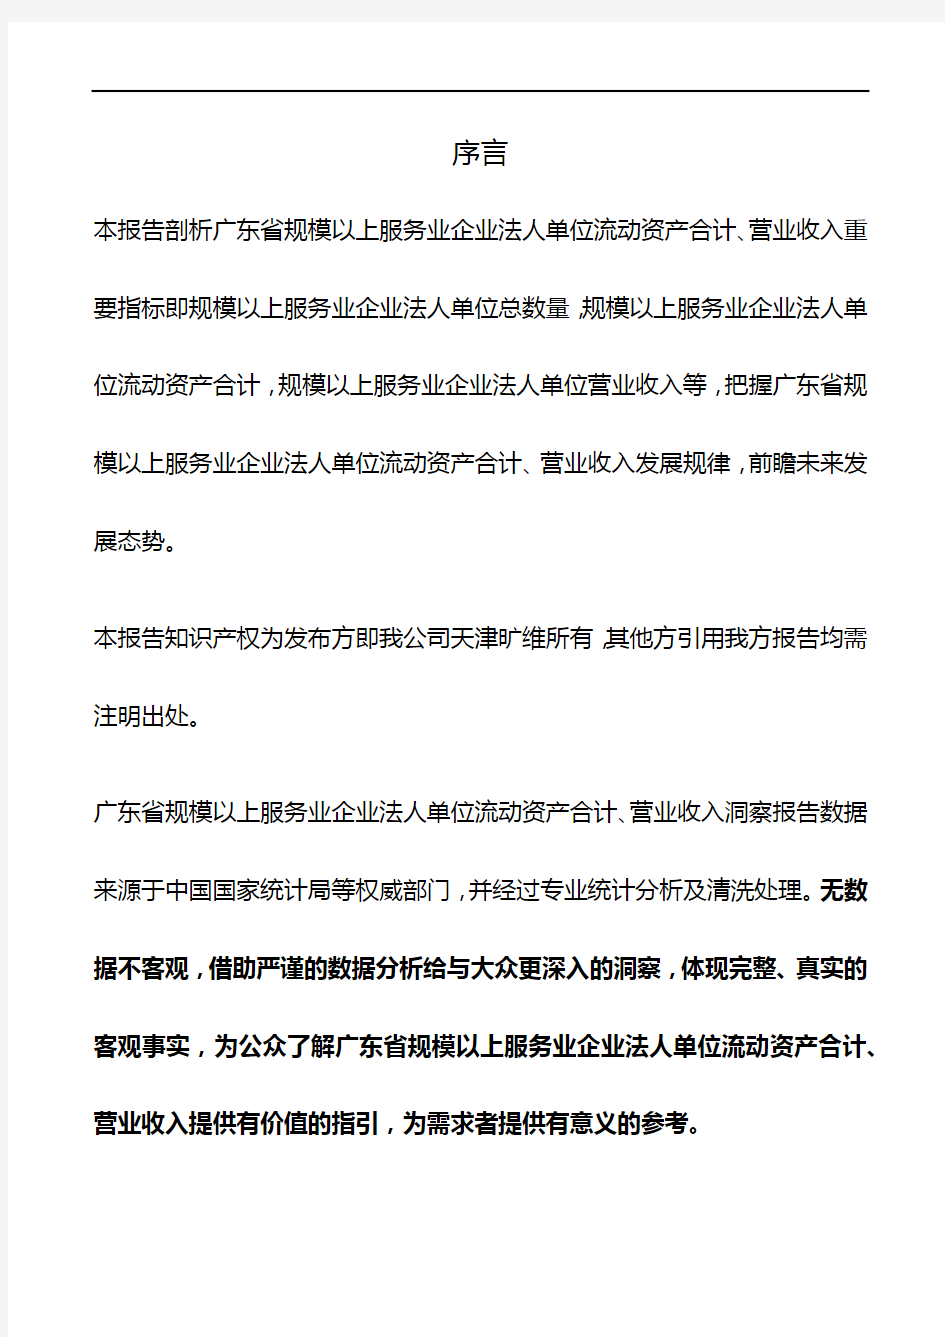 广东省规模以上服务业企业法人单位流动资产合计、营业收入3年数据洞察报告2019版